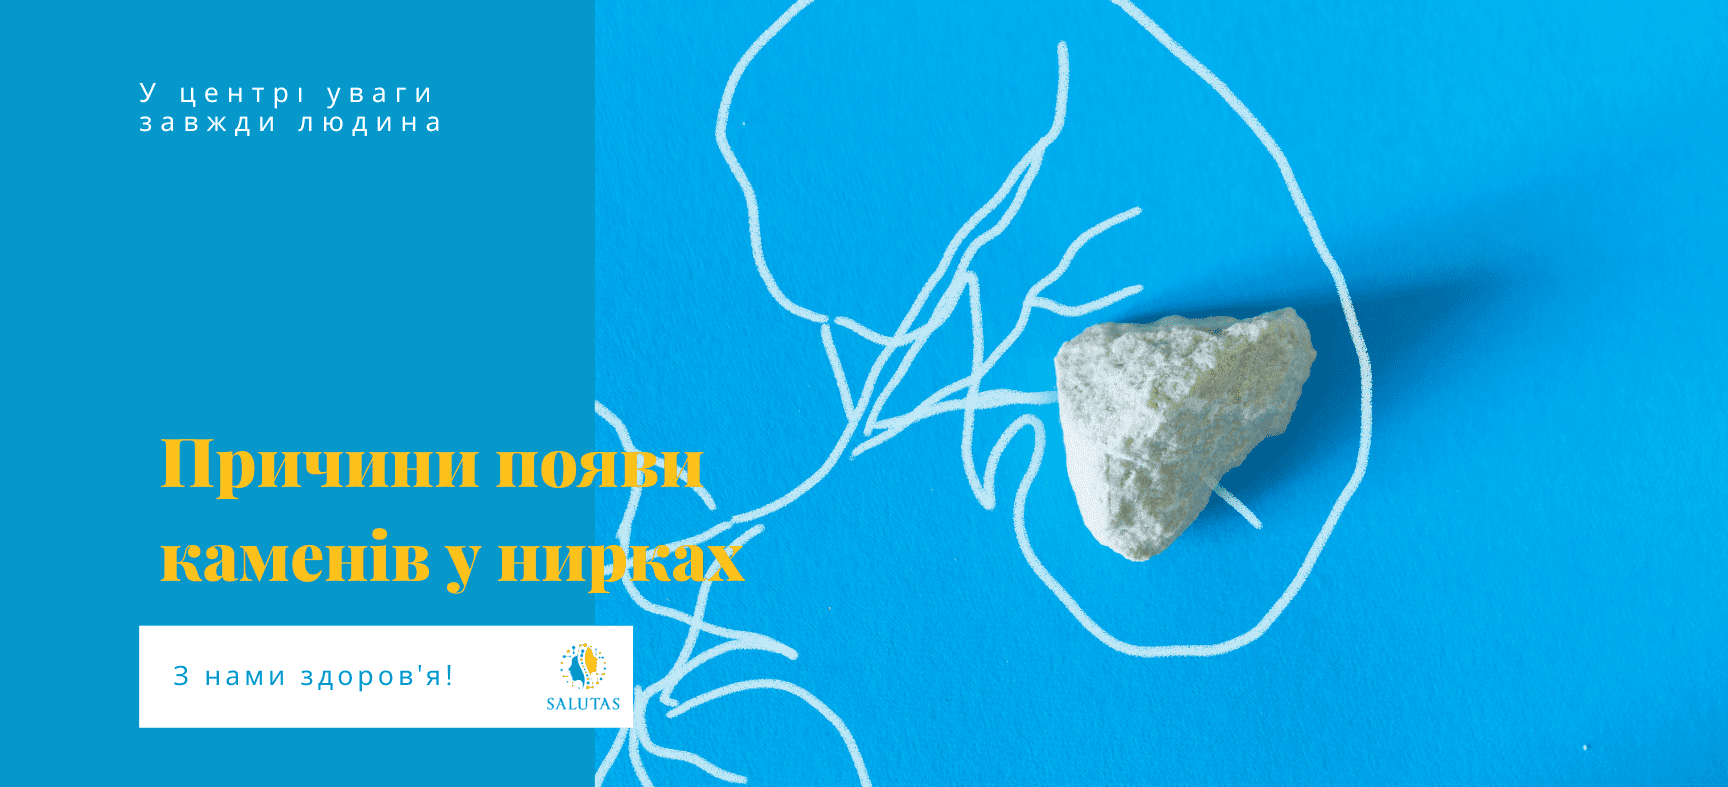 Як видалити камені в нирках